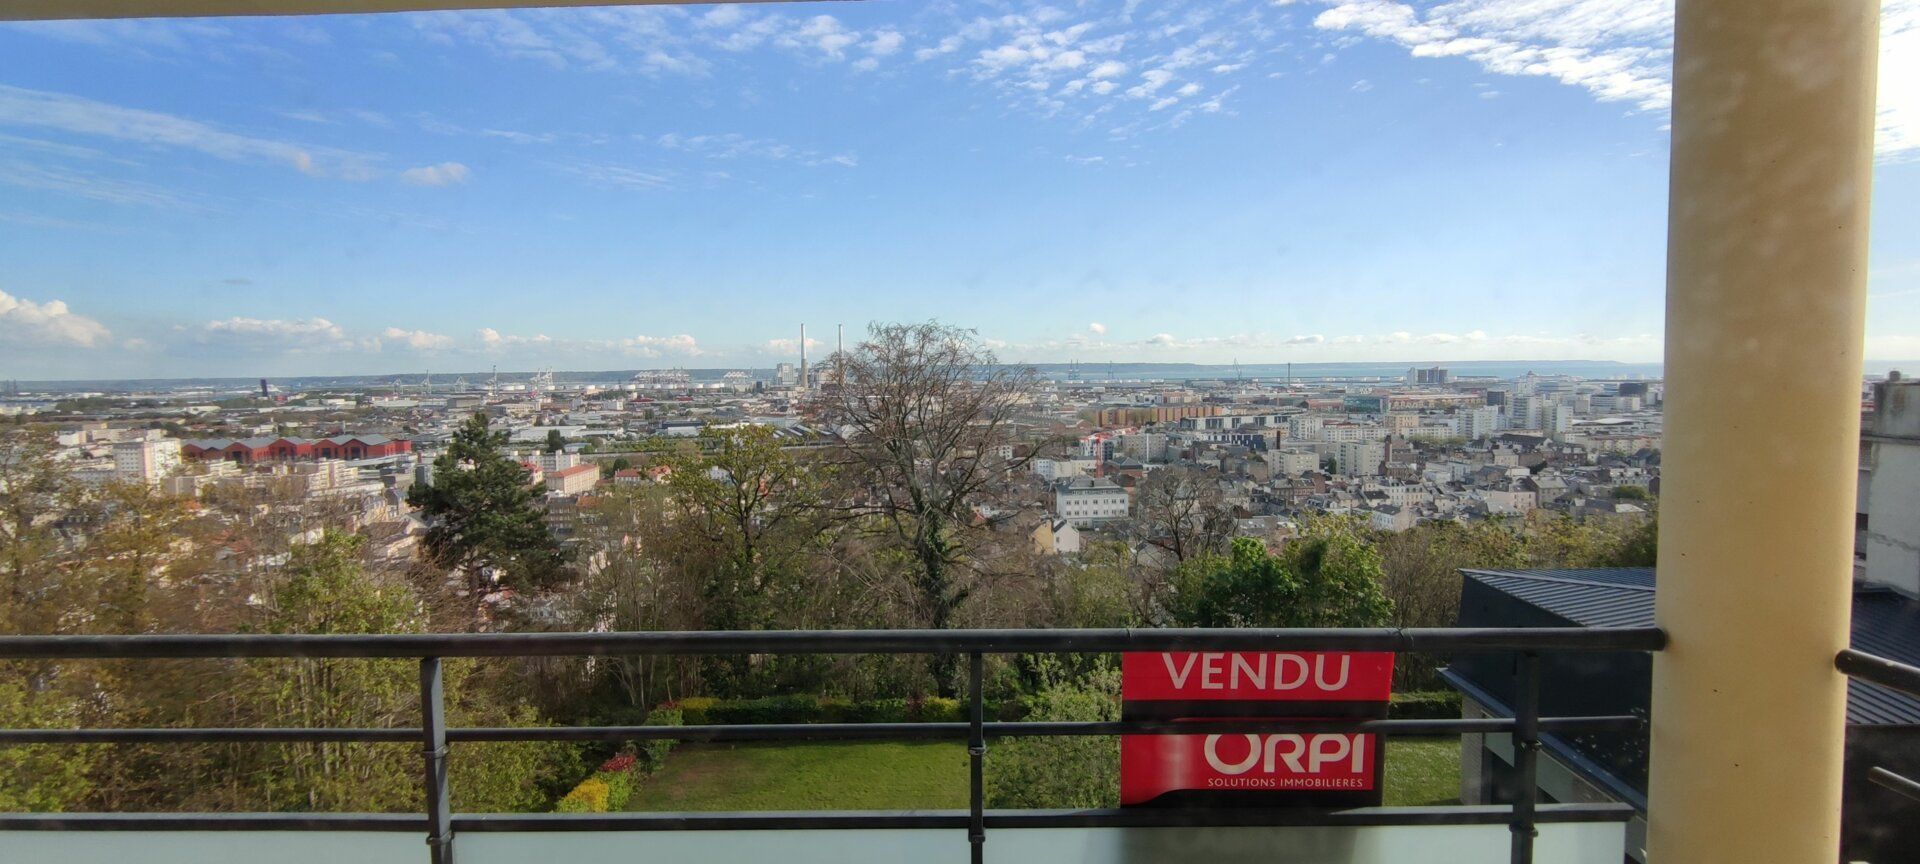 Appartement à vendre 3 67.52m2 à Le Havre vignette-1